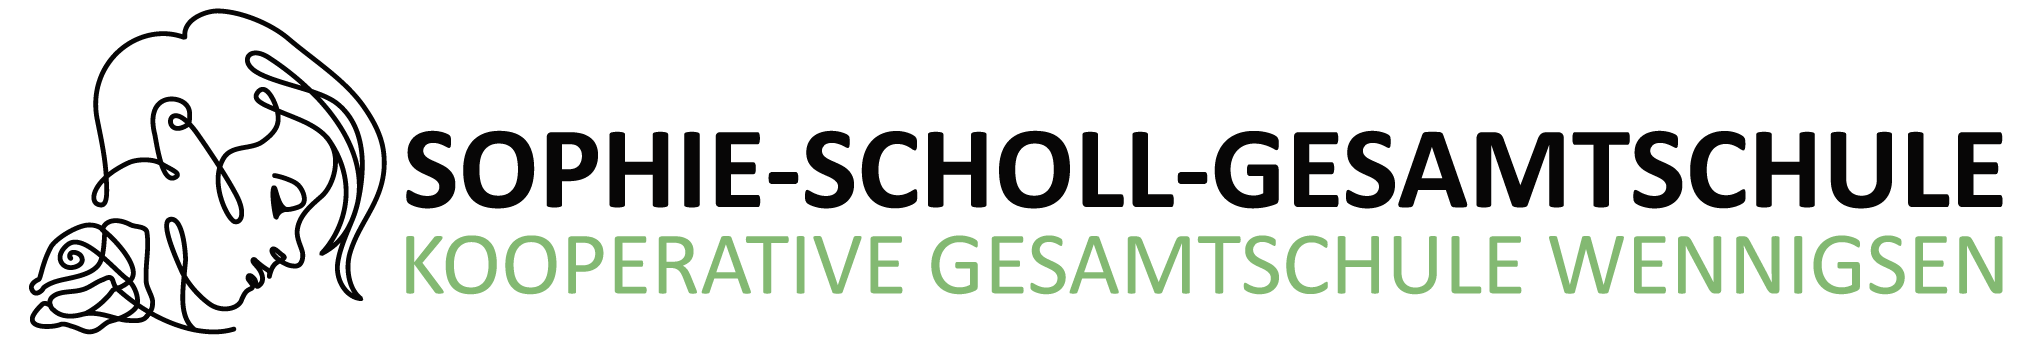 Sophie-Scholl-Gesamtschule Wennigsen